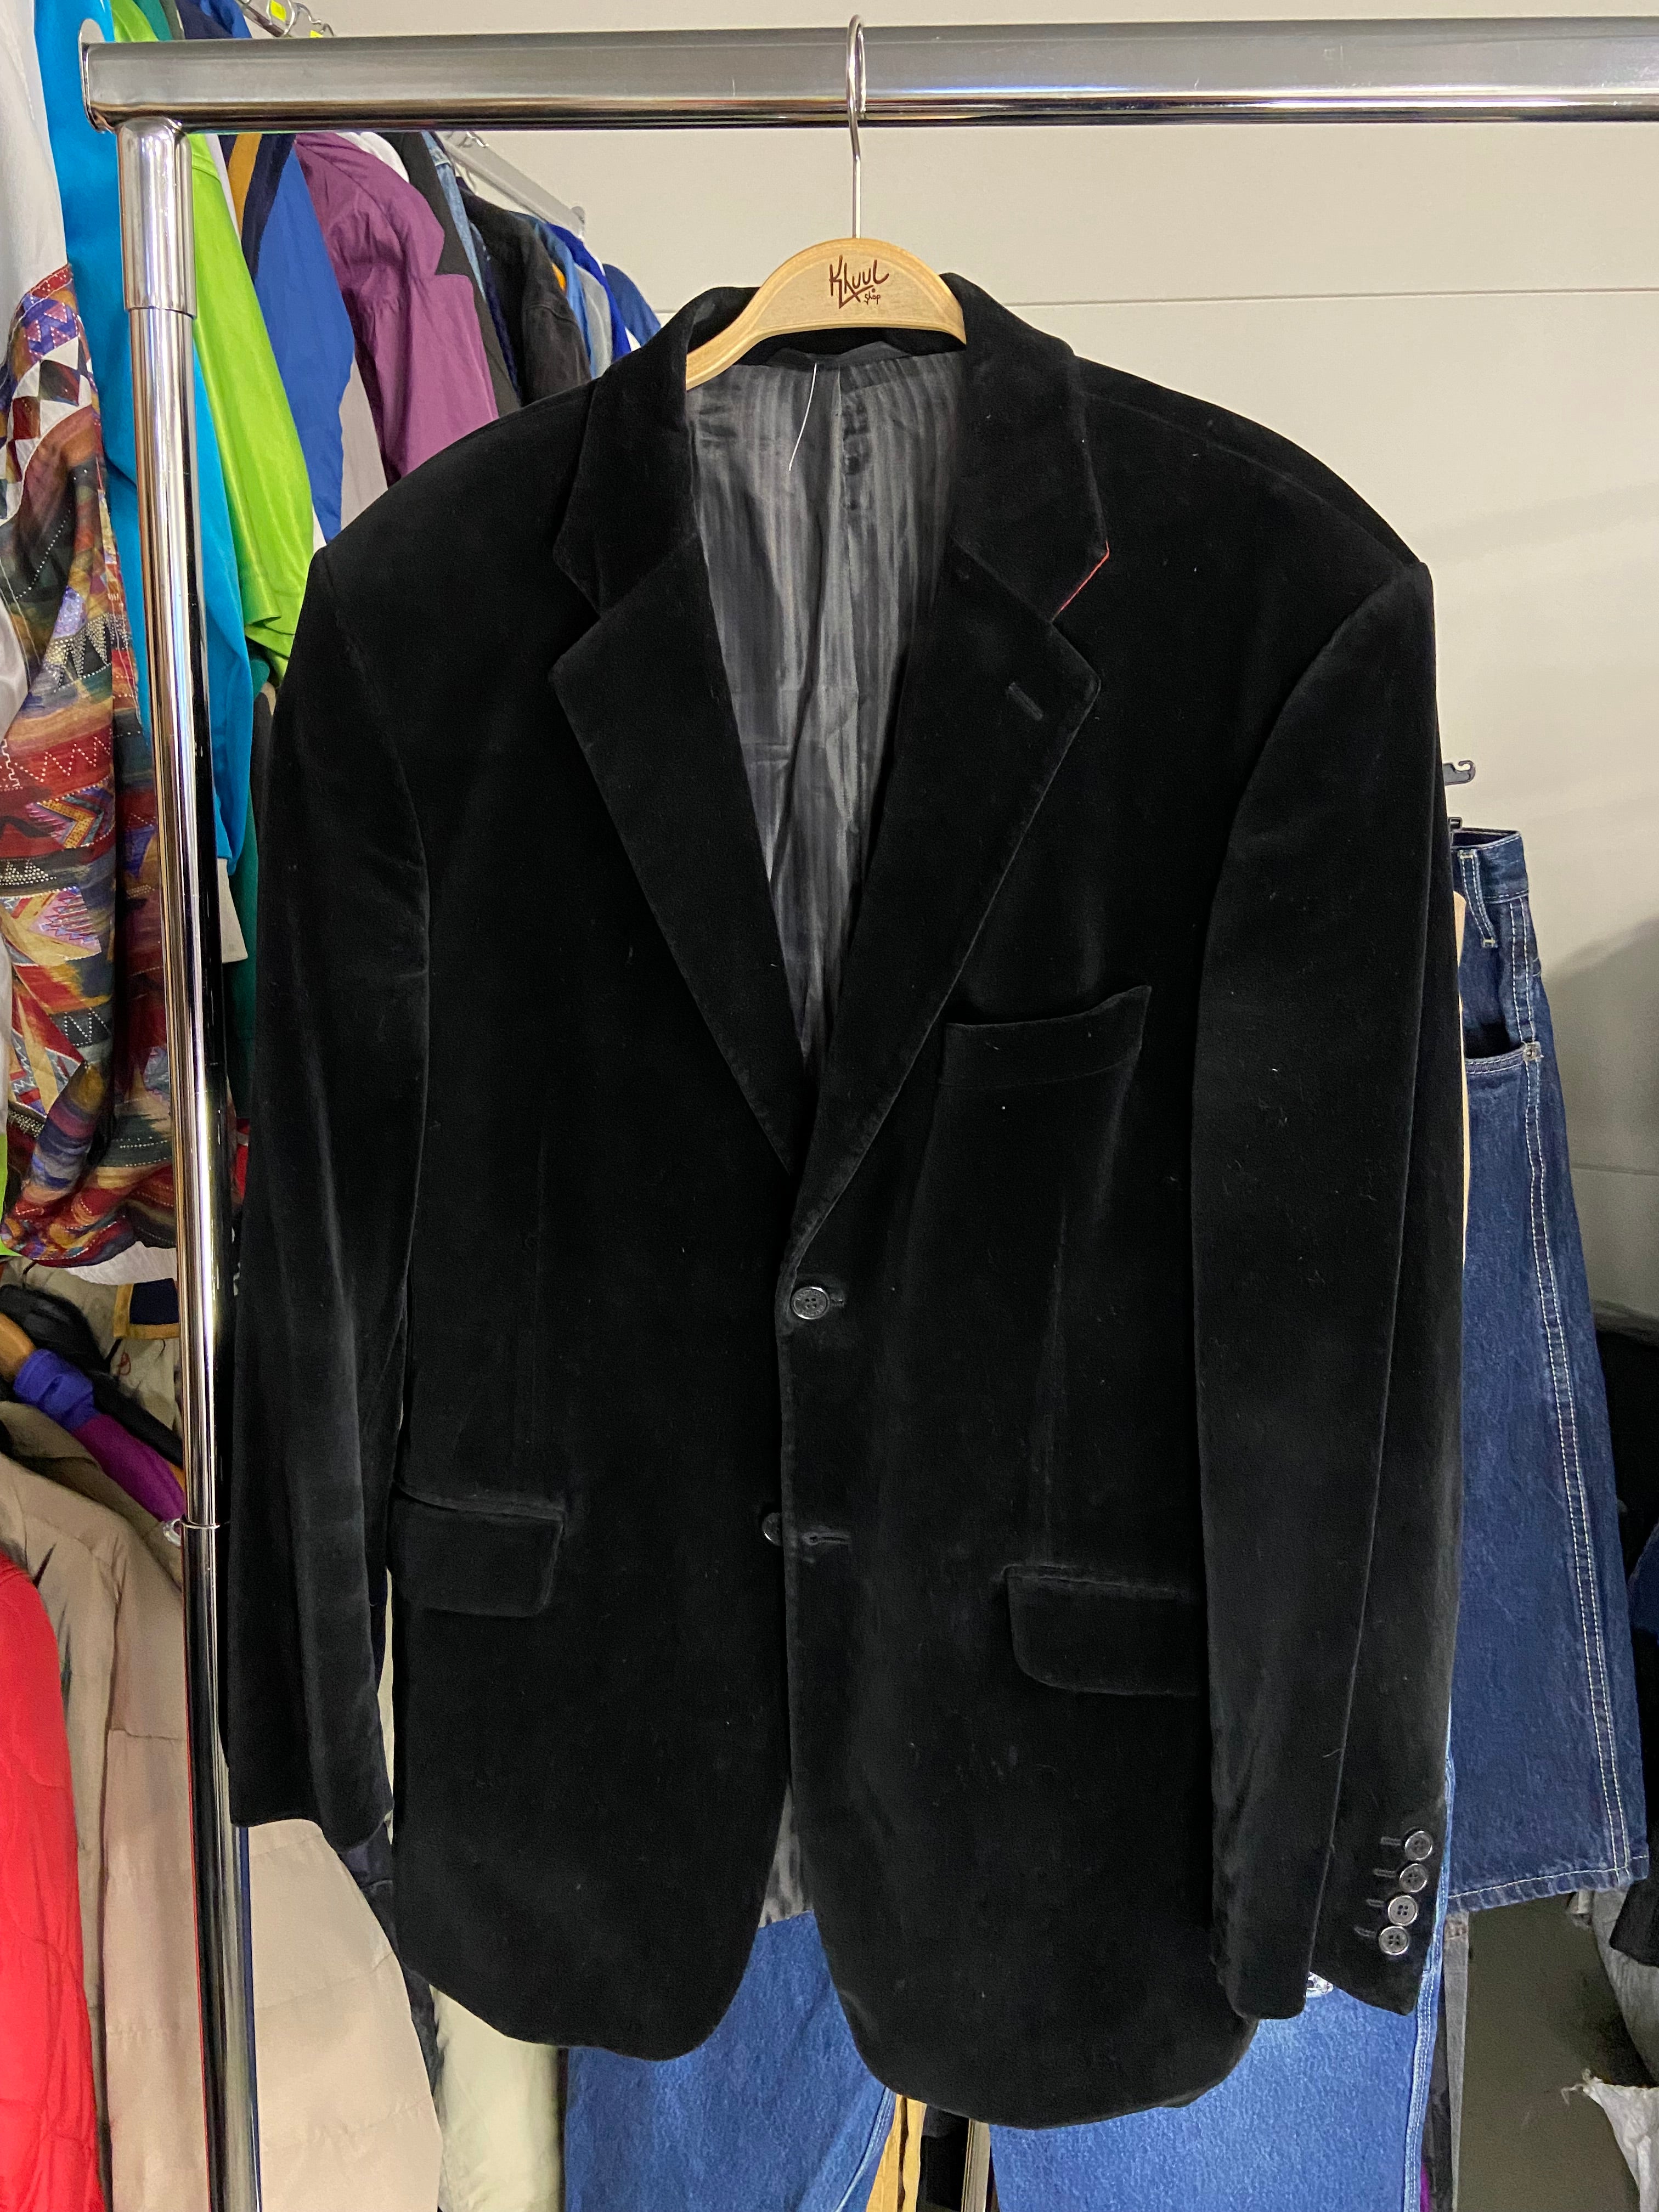 Baltman Blazer Black Suede L Mens Suit